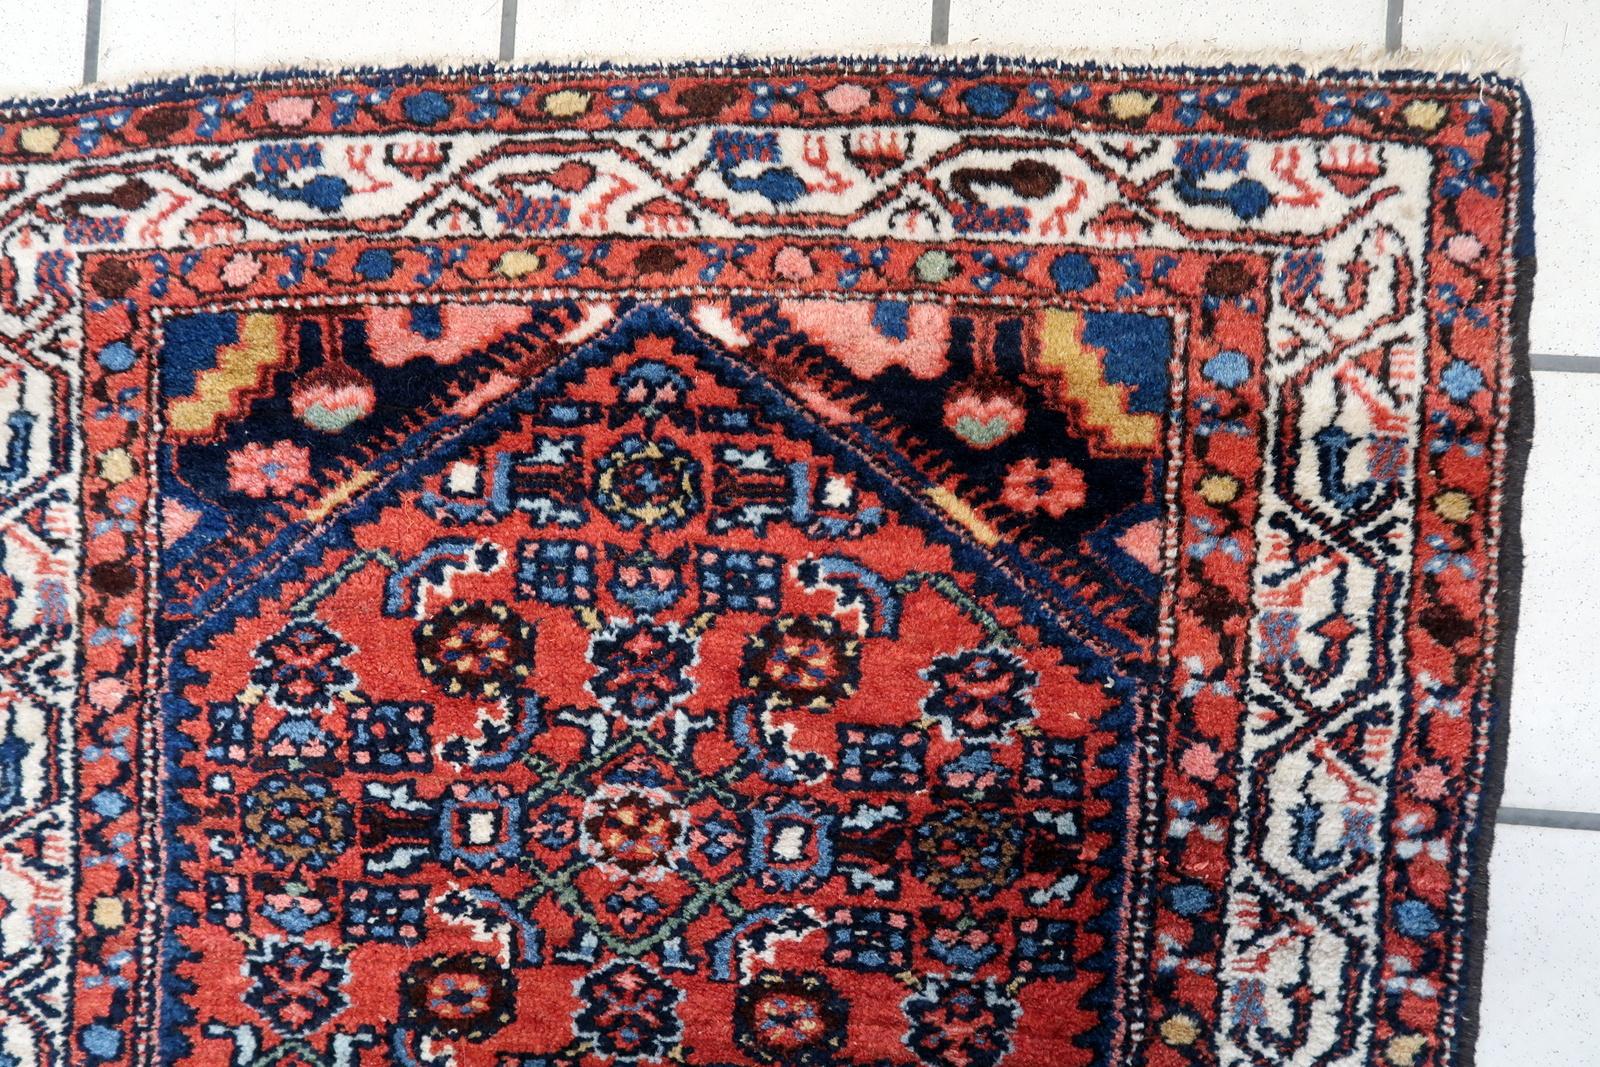 Handgefertigter Hamadan-Teppich im Vintage-Persischen Stil:

Abmessungen: Dieser sorgfältig gefertigte Teppich misst 2,4' x 4,1' (76cm x 126cm) und eignet sich daher für kleinere Räume oder als Akzentstück.
Kunstfertigkeit: Dieser aus den 1970er